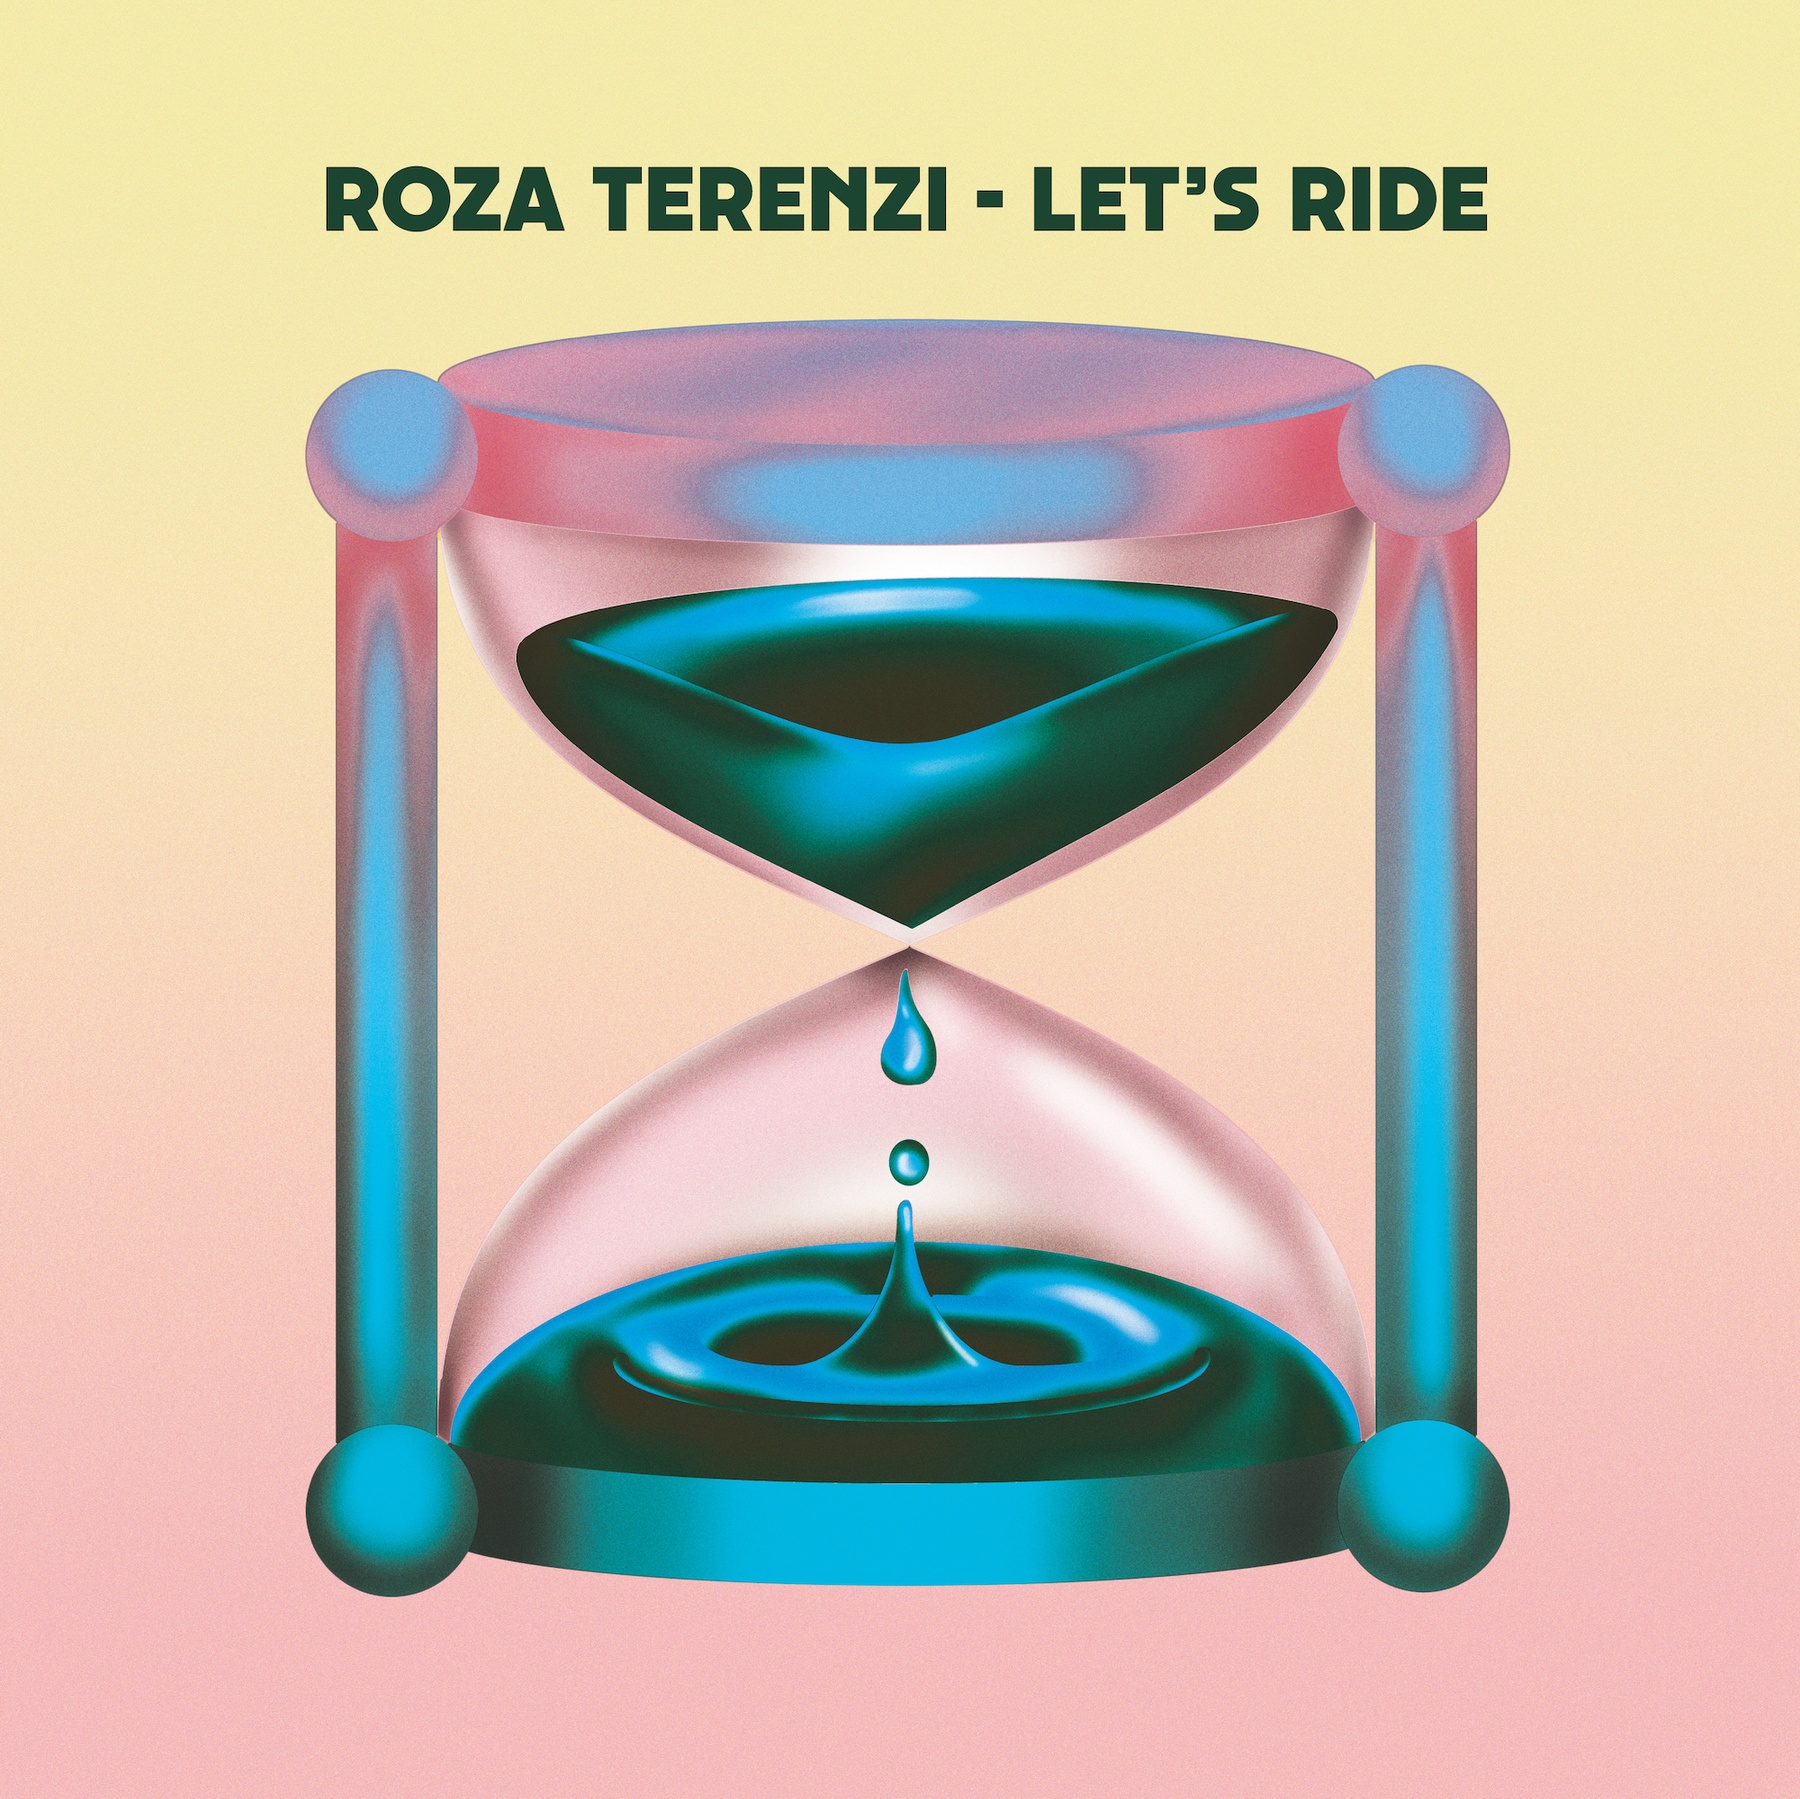 Roza Terenzi - Let's Ride